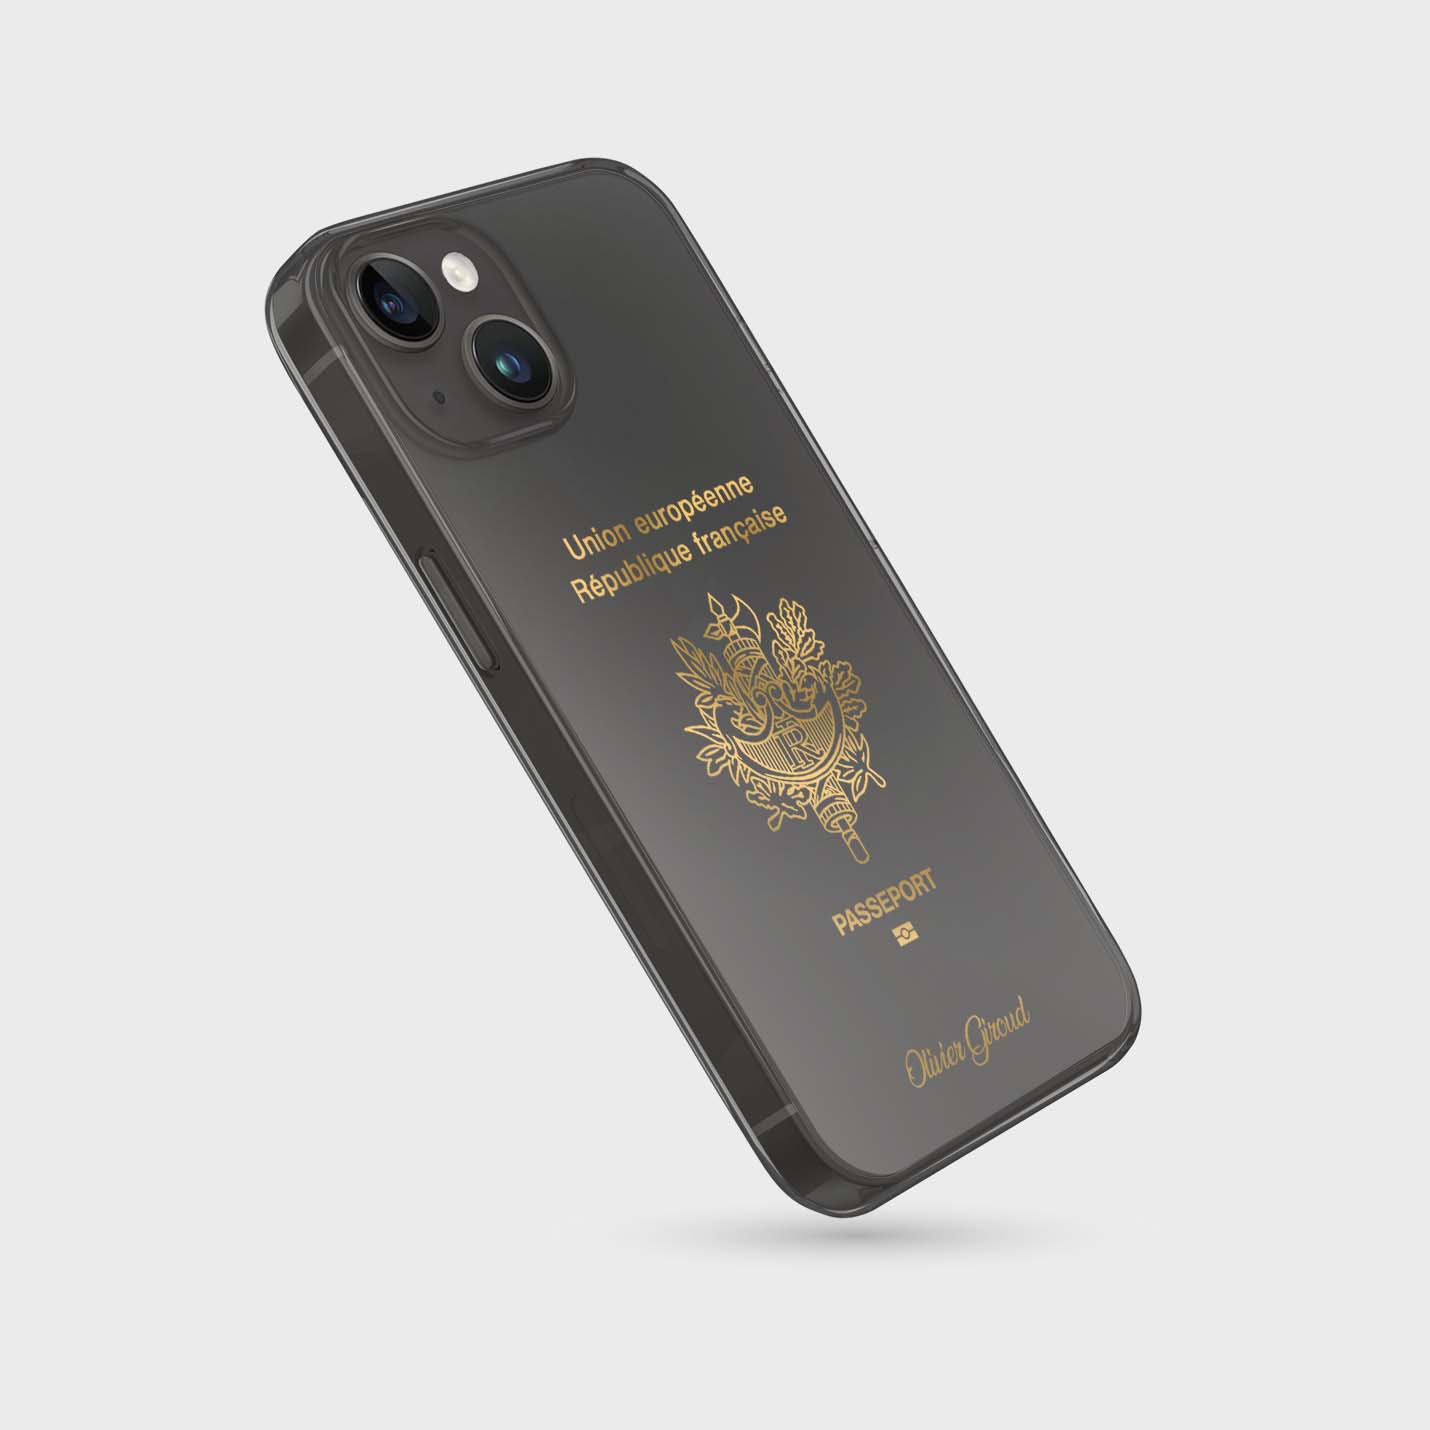 Handyhüllen mit Reisepass - Frankreich - 1instaphone